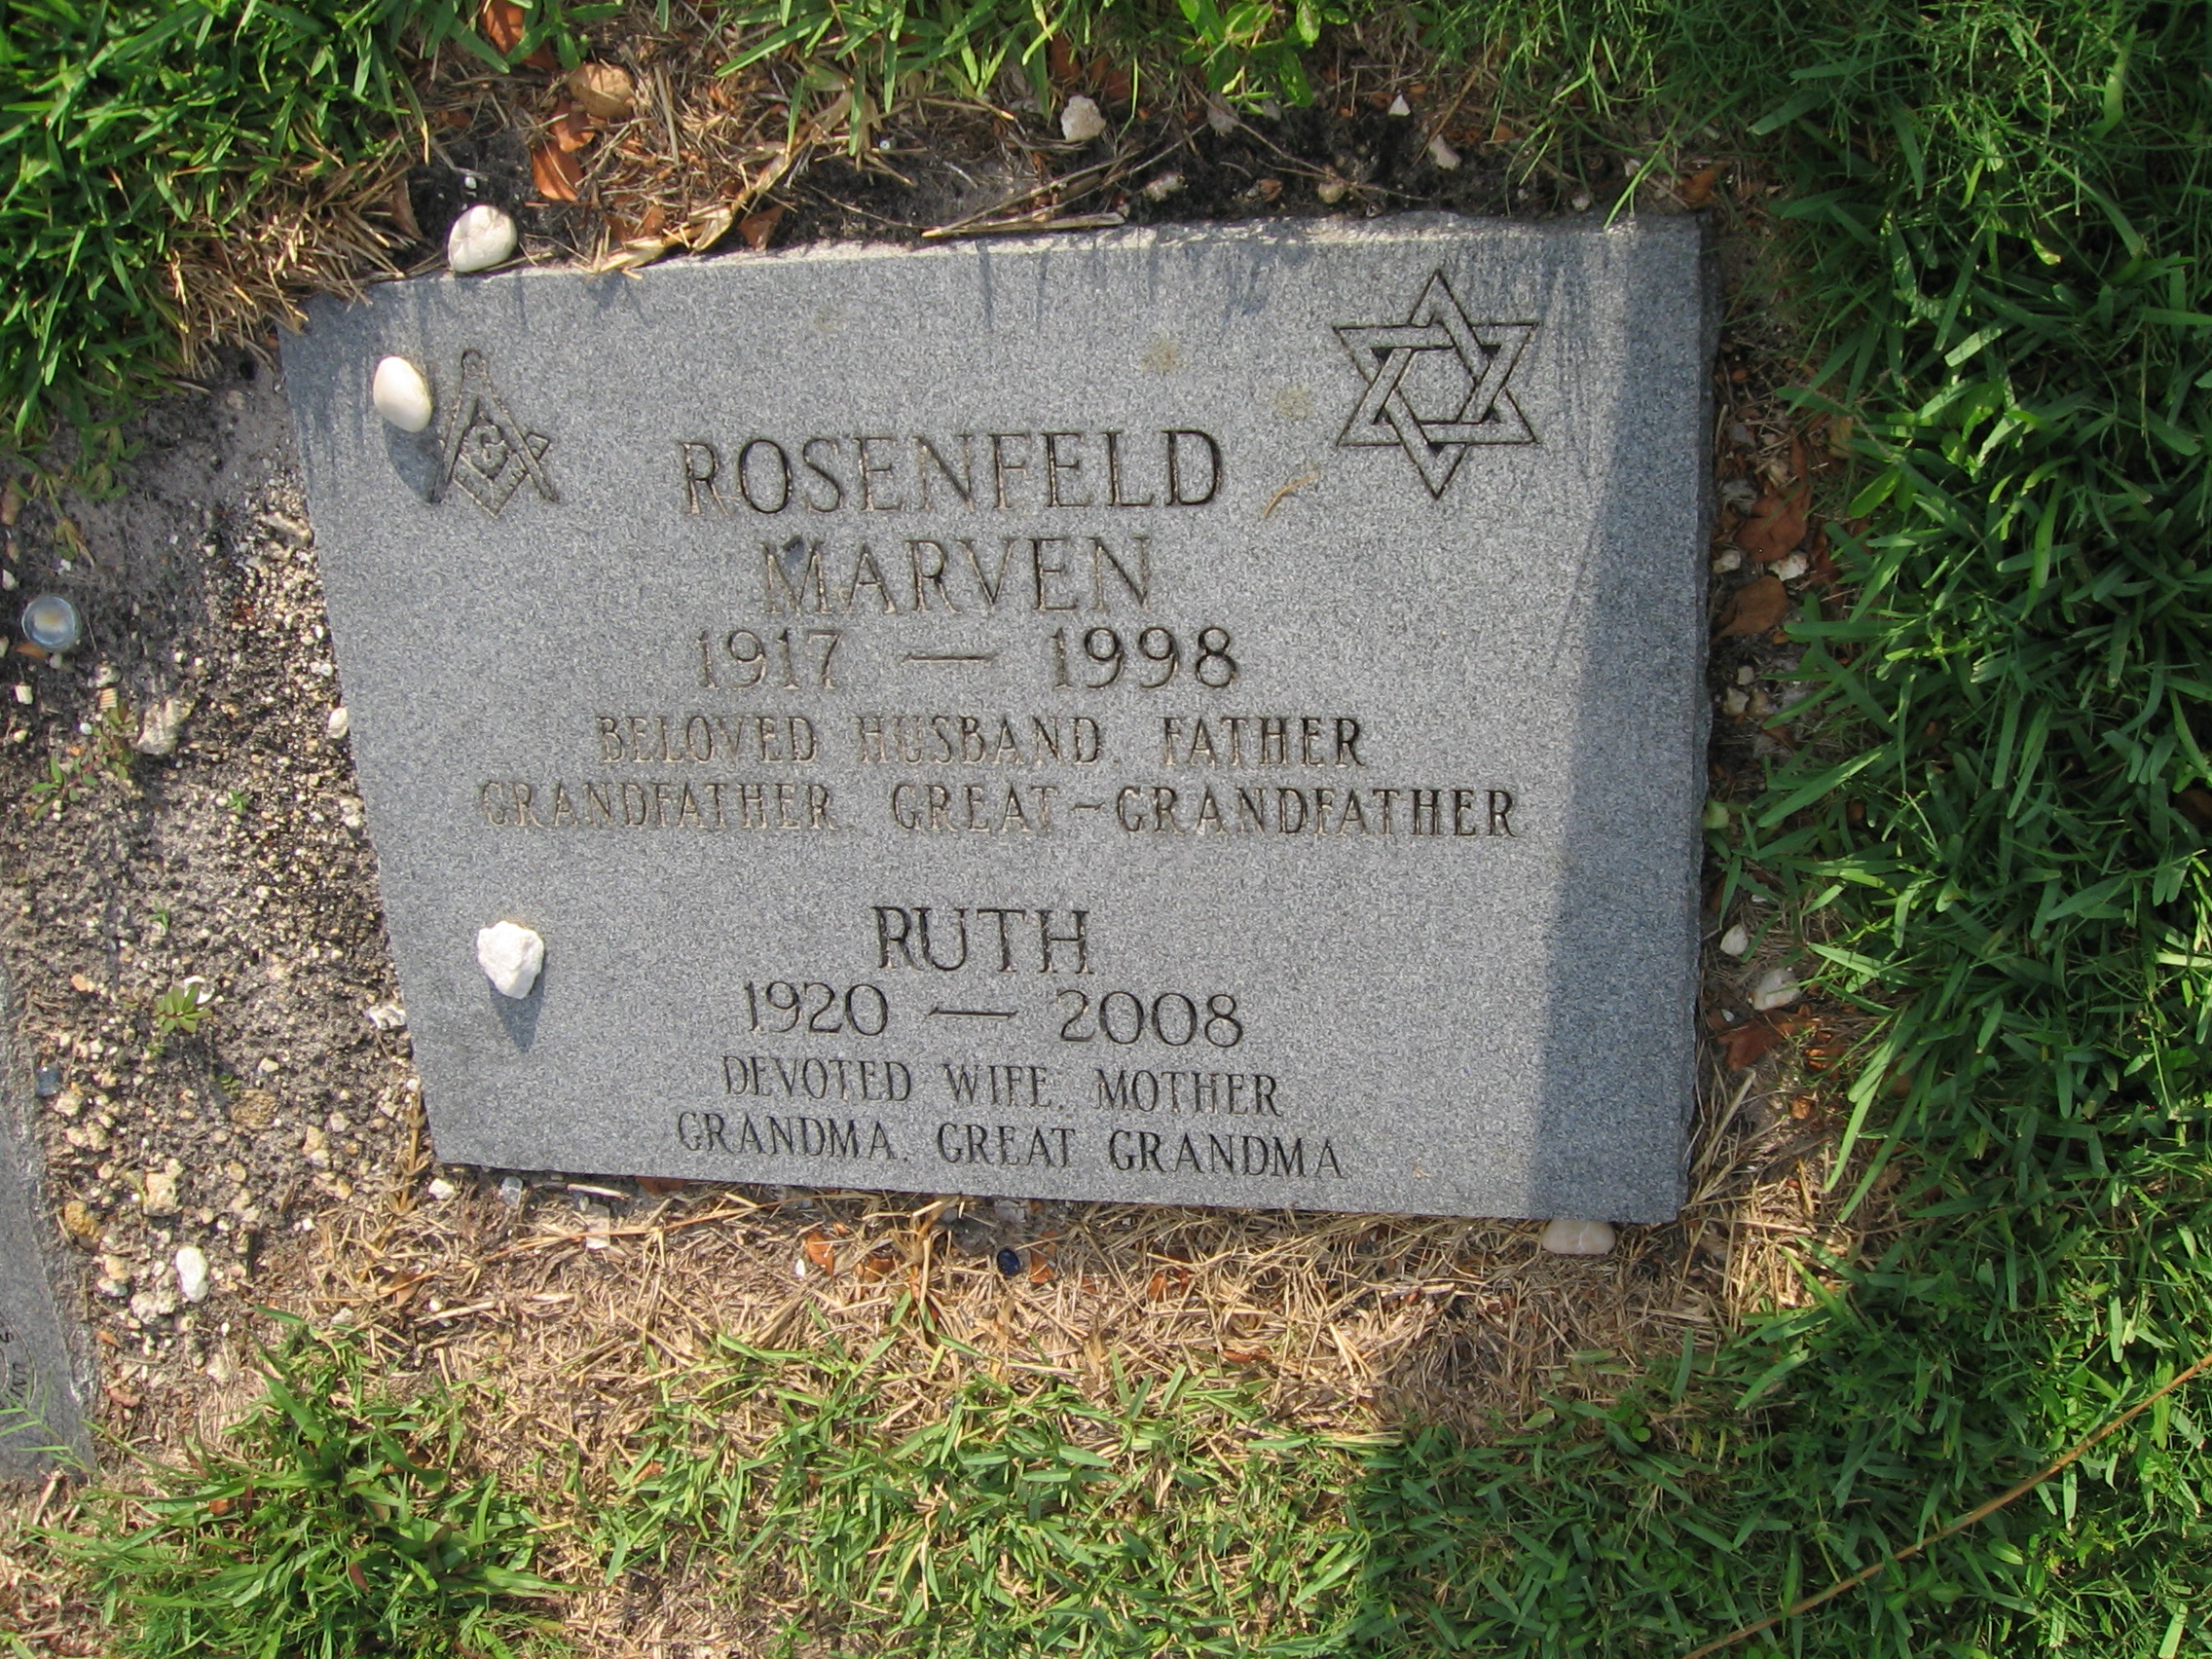 Marven Rosenfeld